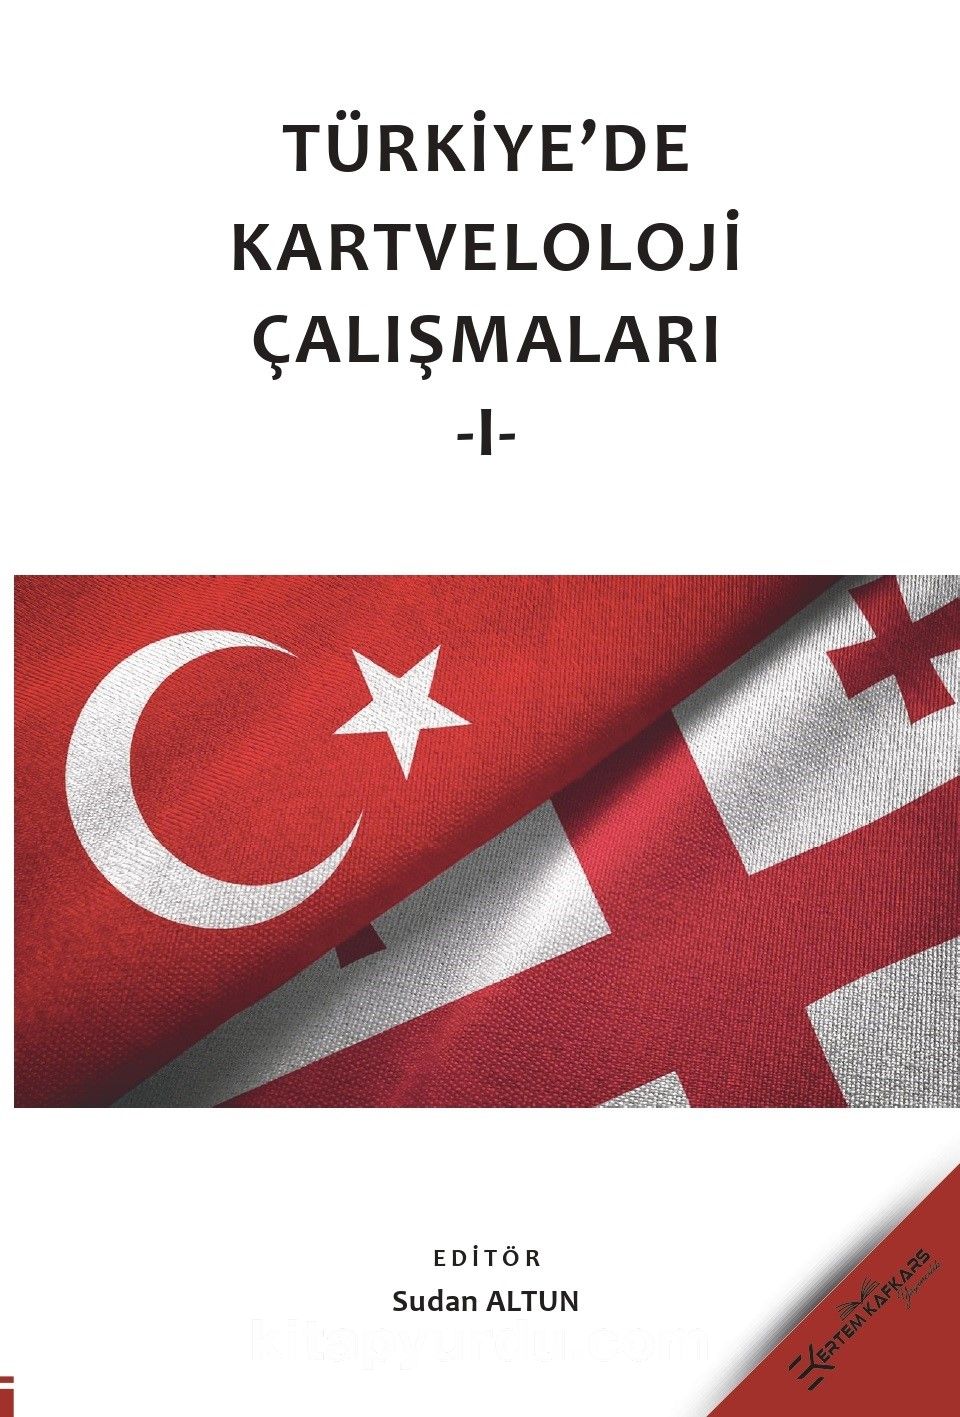 Türkiye’de Kartveloloji Çalışmaları 1